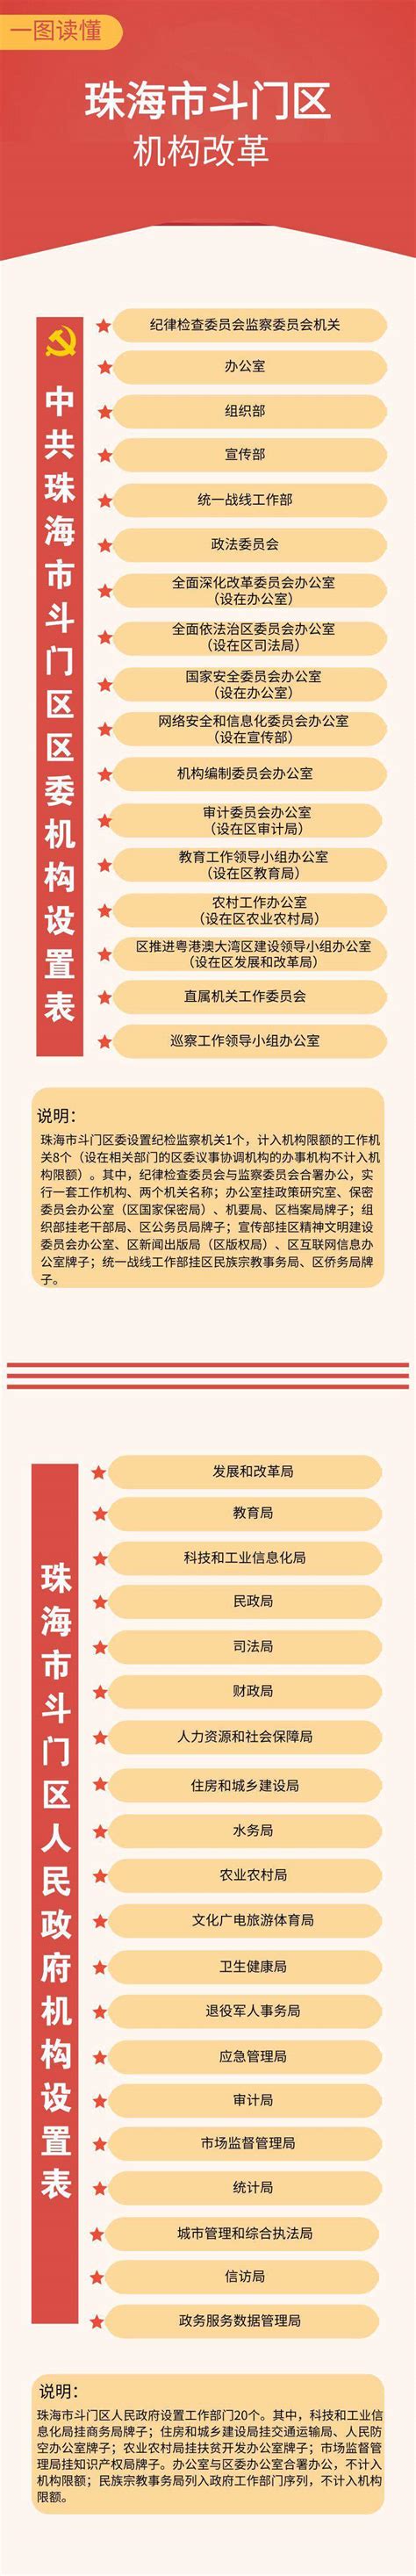 河北省机构改革方案